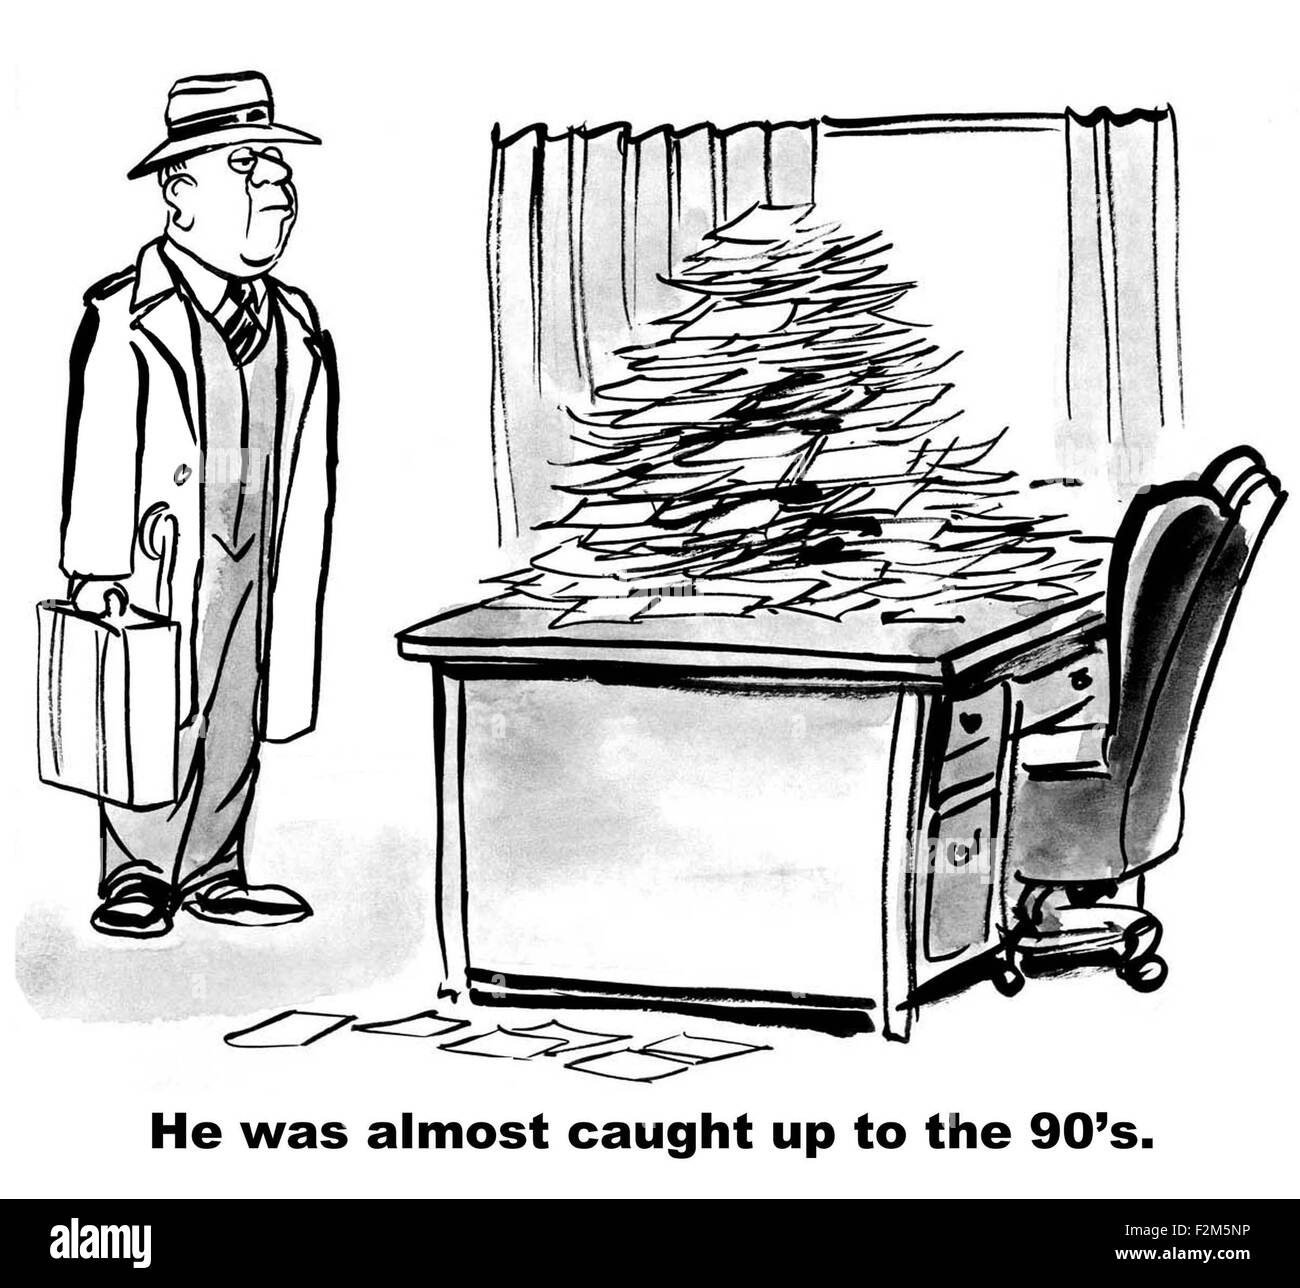 Caricature d'homme d'antan et débordant de documents sur son bureau, "il était presque rattrapé les années 90'. Banque D'Images